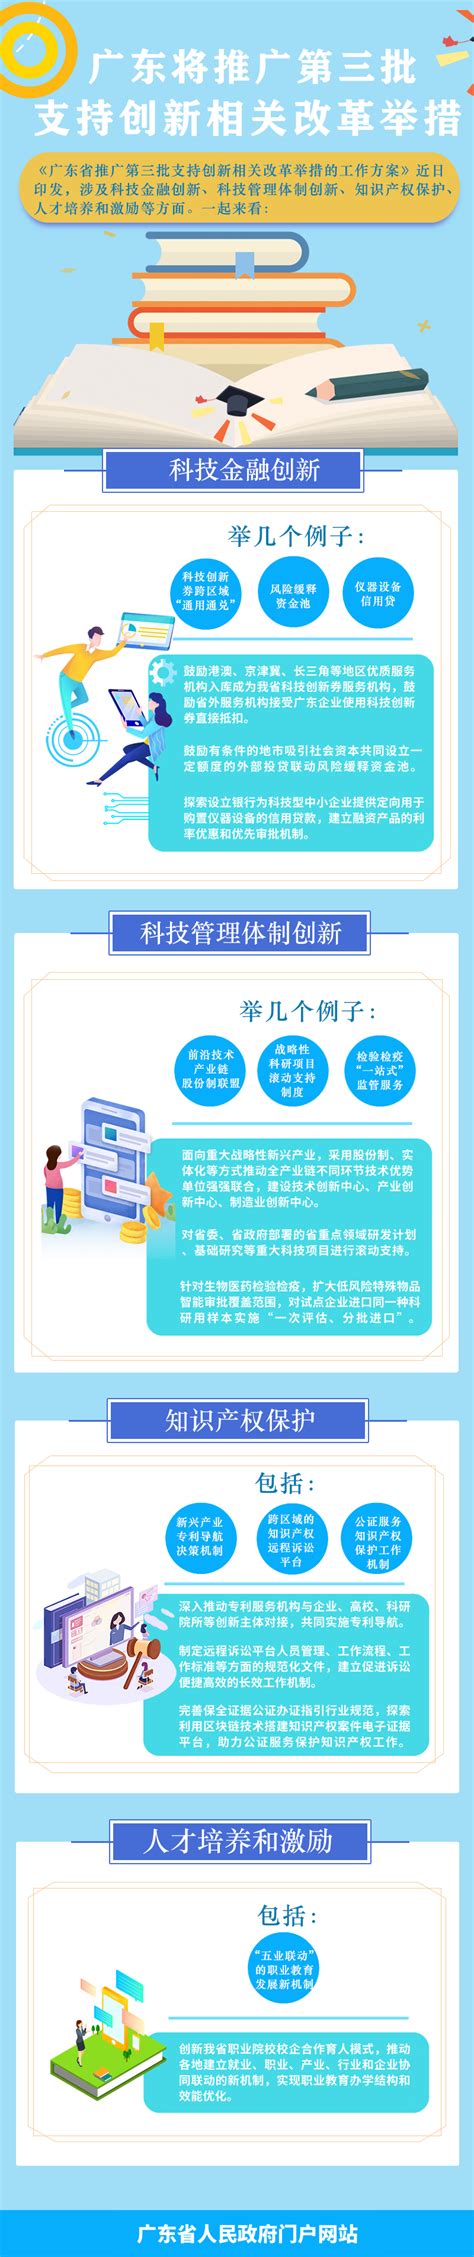 汉阴县三举措全面安排部署科技之春宣传月活动 - 安康市科学技术协会